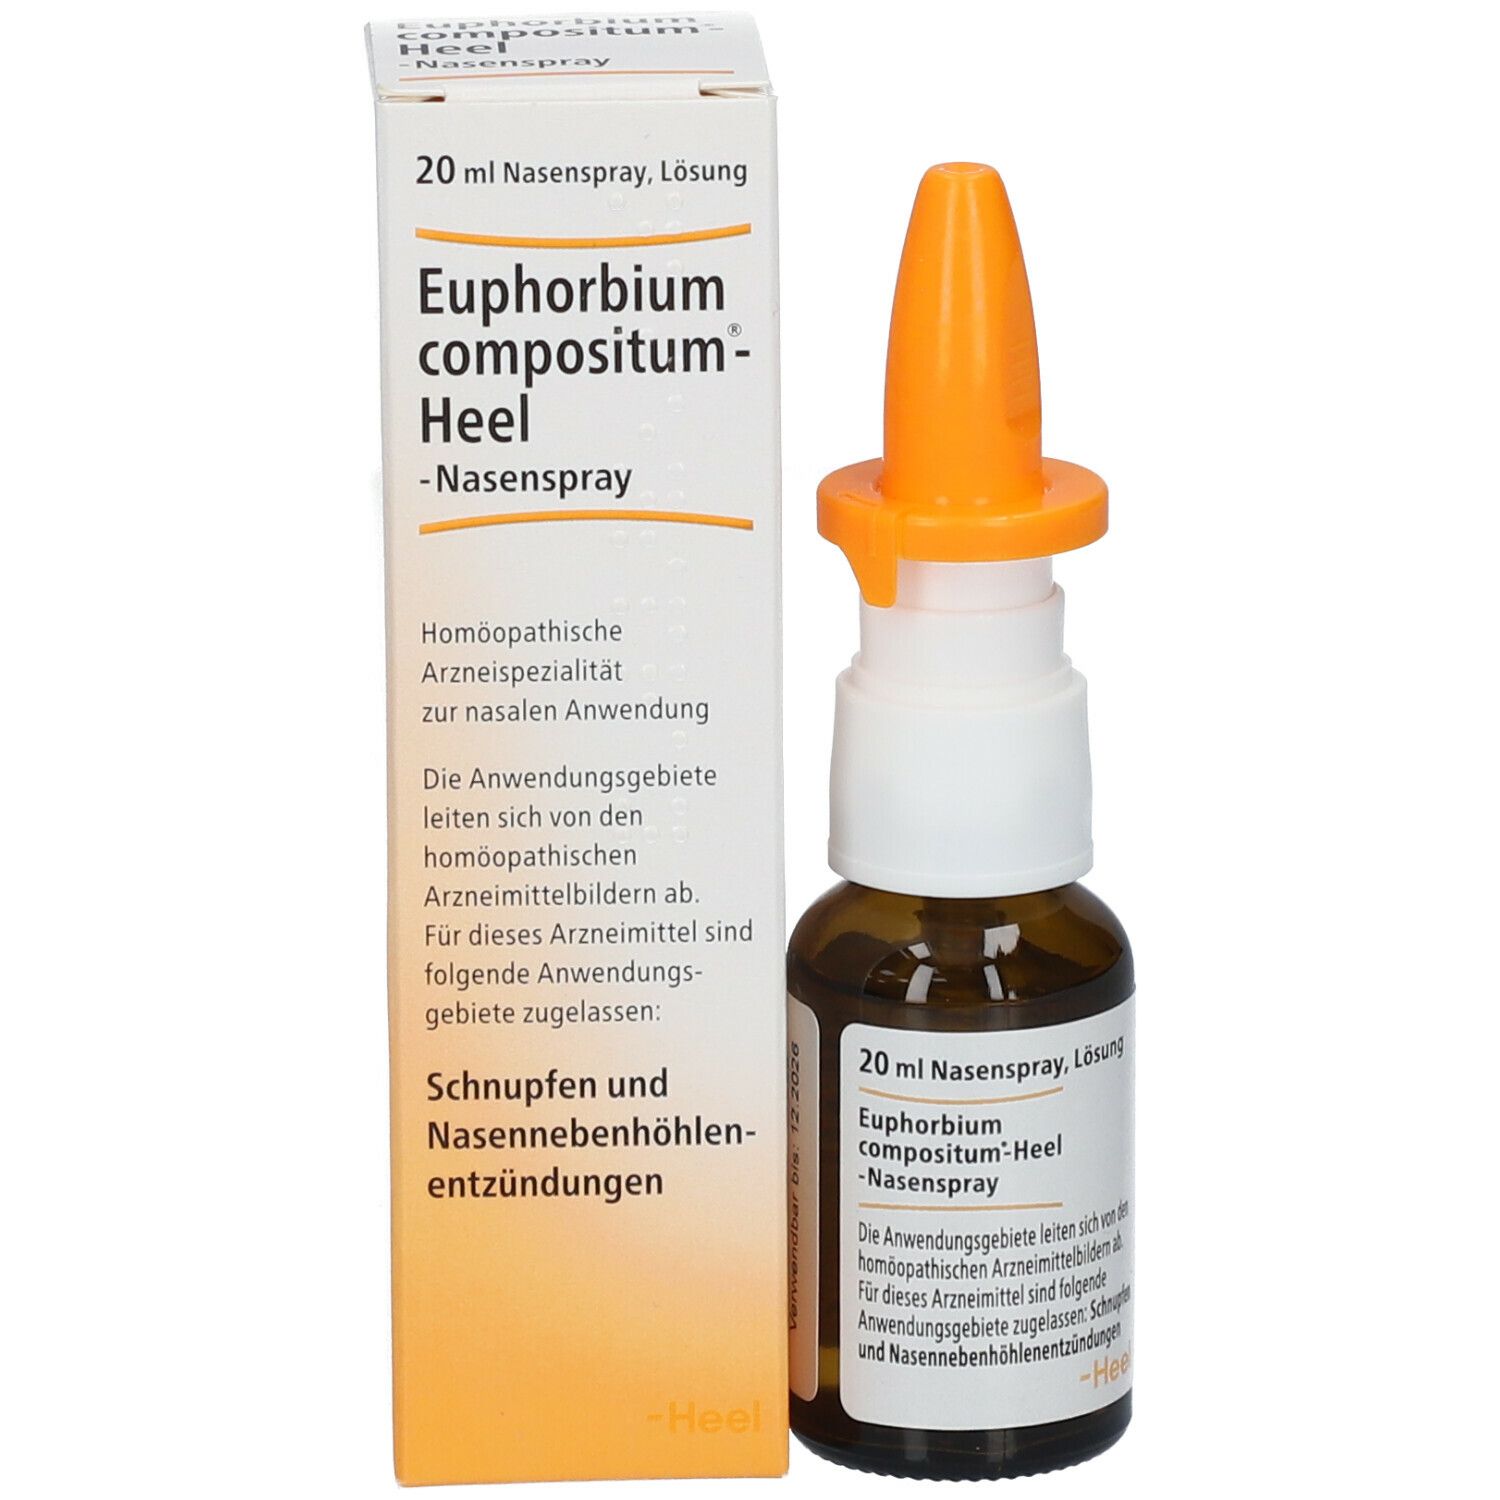 Euphorbium compositum-Heel® Nasenspray